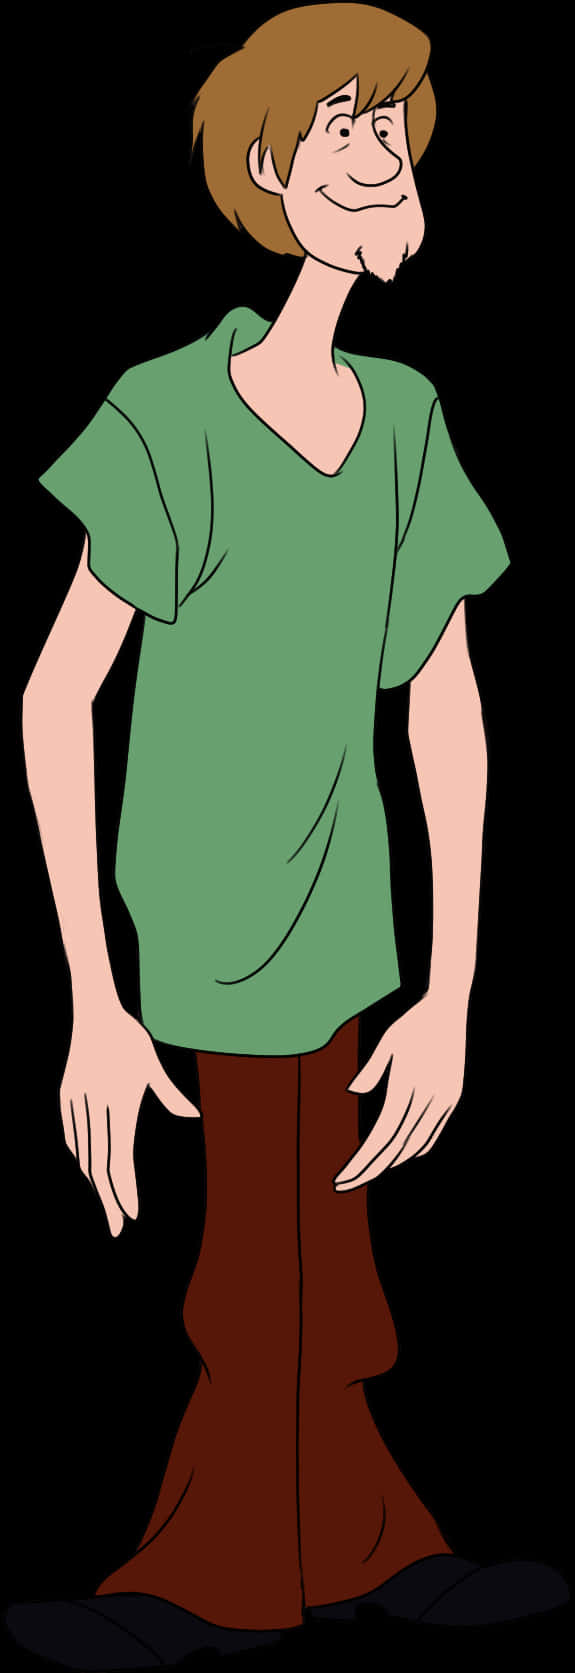 Shaggy Rogers, en elskelig medlem af Scooby Doo-holdet. Wallpaper